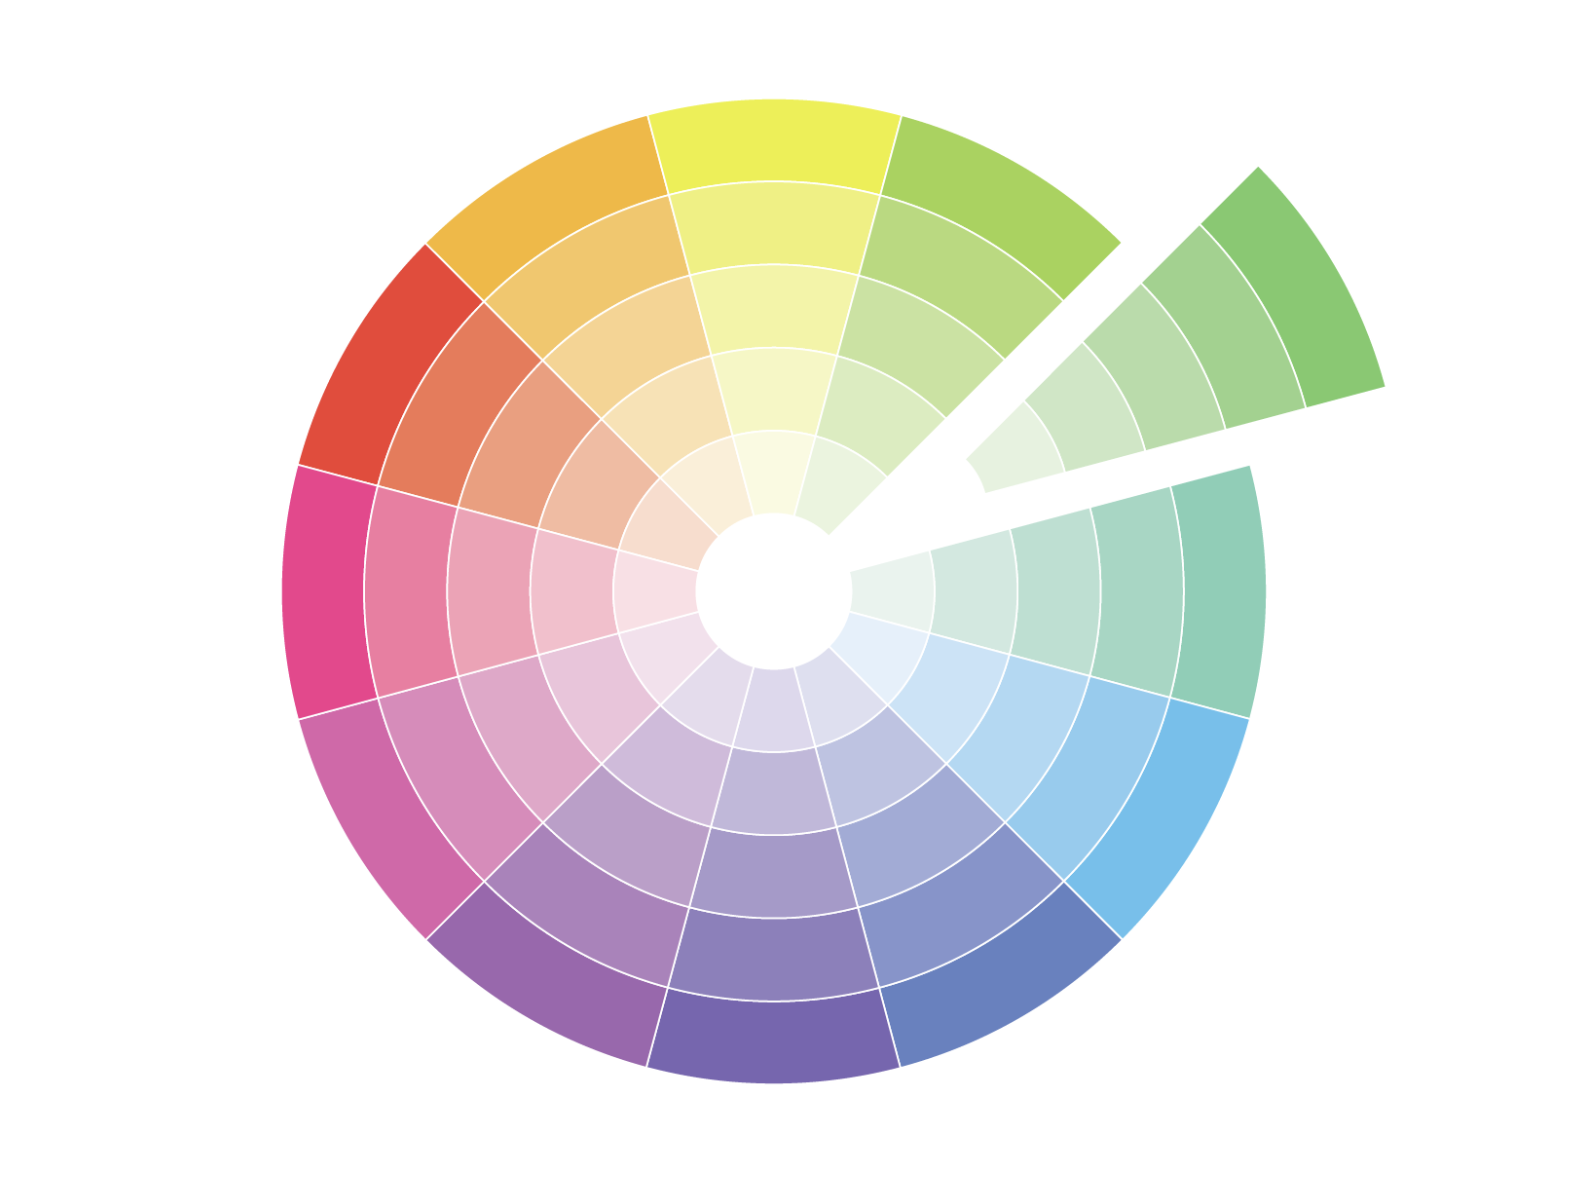 Koło barw to diagram kołowy przedstawiający układ kolorów wraz z ich relacjami chromatycznymi.